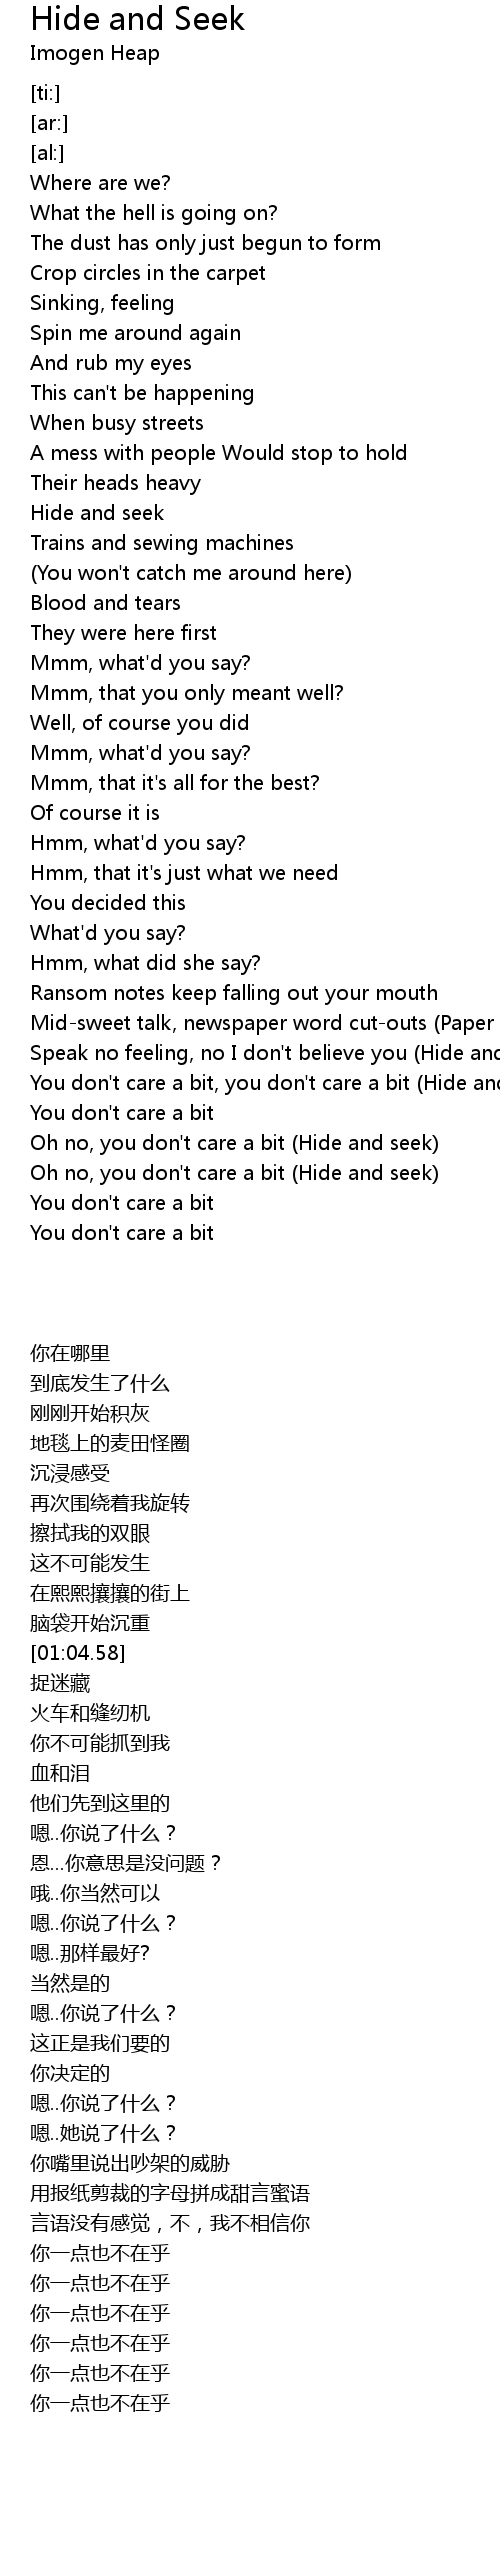 Ding dong hide and seek [Lyrics]/English 